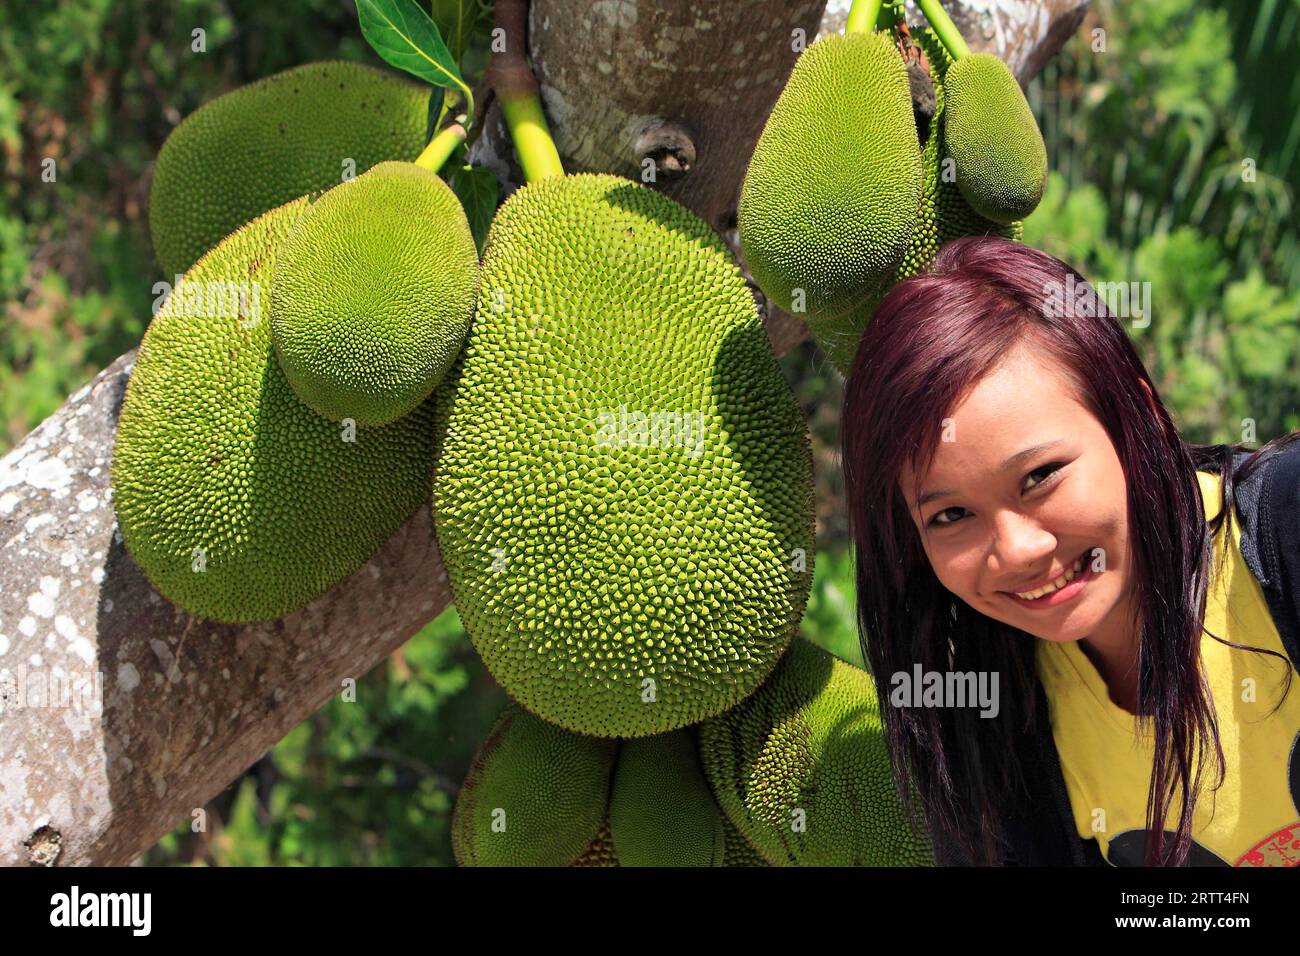 Jackfruit tree (Artocarpus heterophyllus) on tree, Indonesia Stock Photo